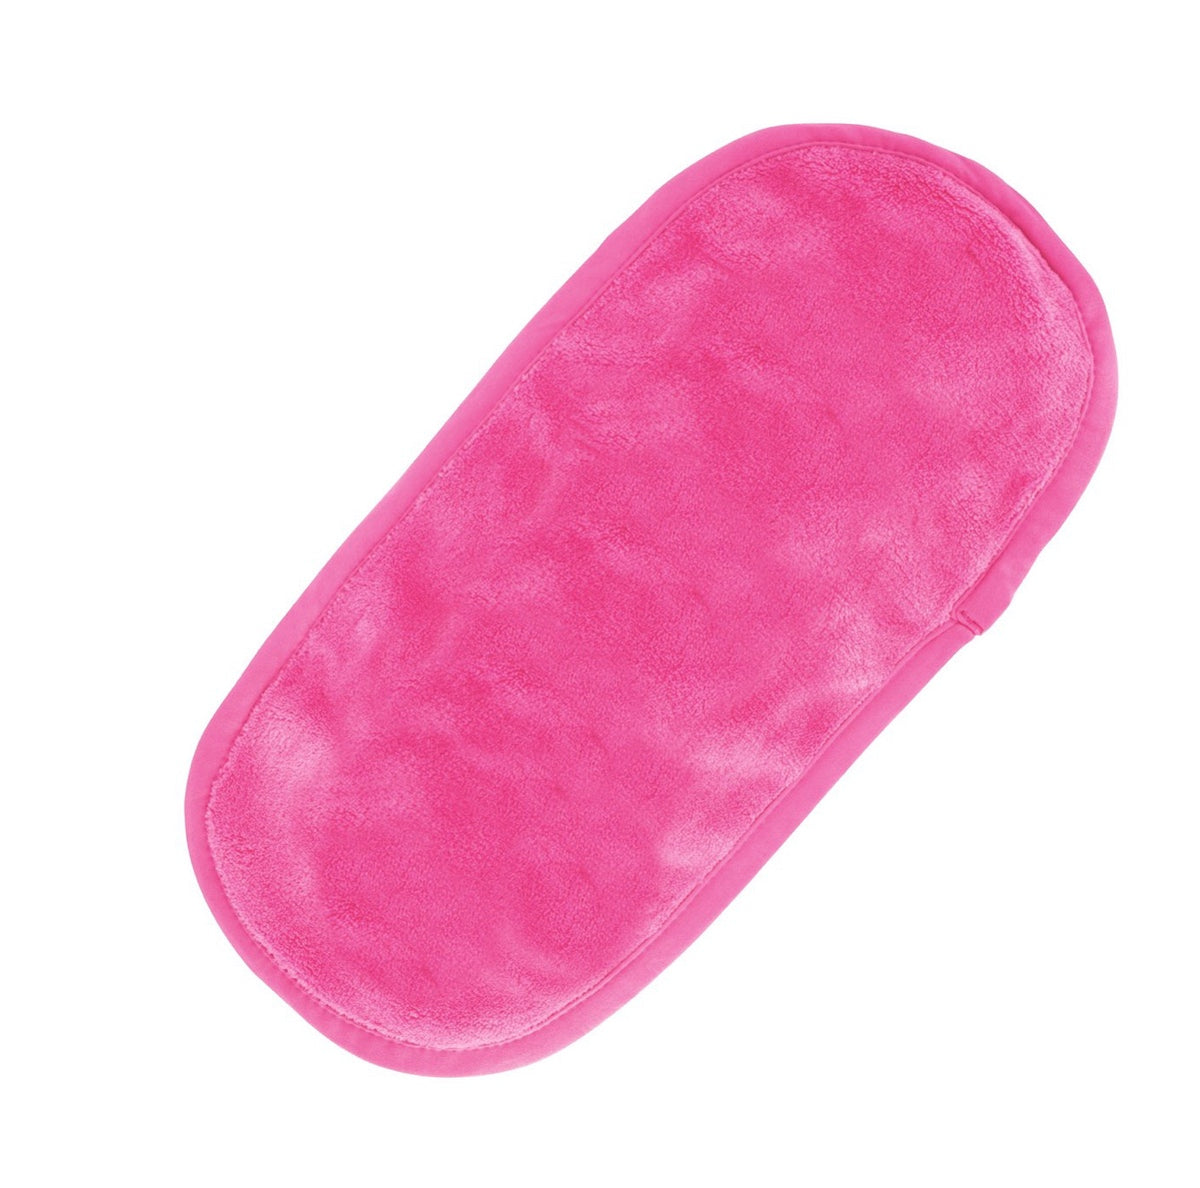 The Original MakeUp Eraser - Pink